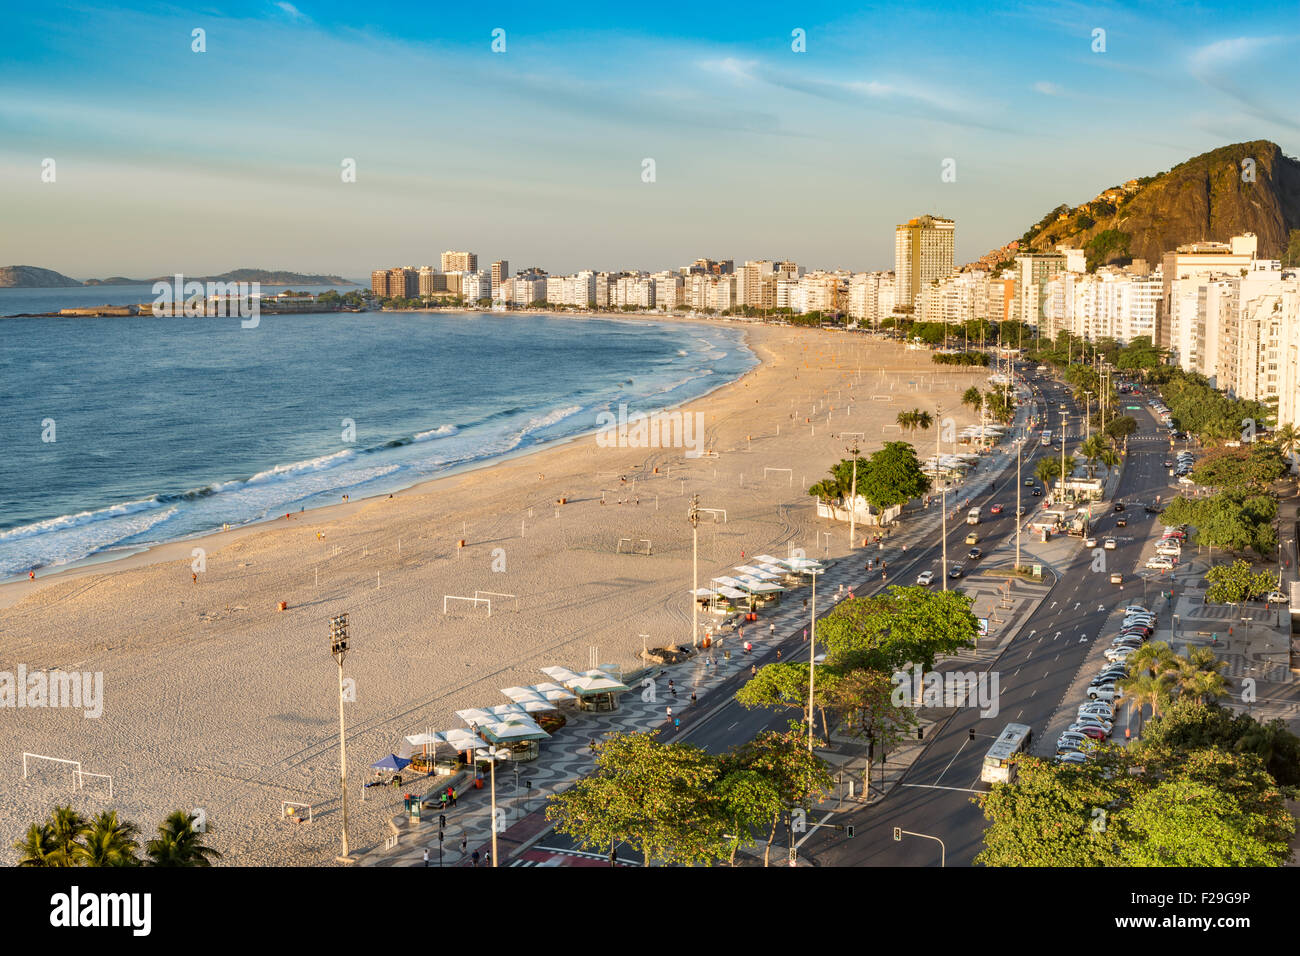 Vue aérienne de la plage de Copacabana à Rio de Janeiro, tôt le matin Banque D'Images